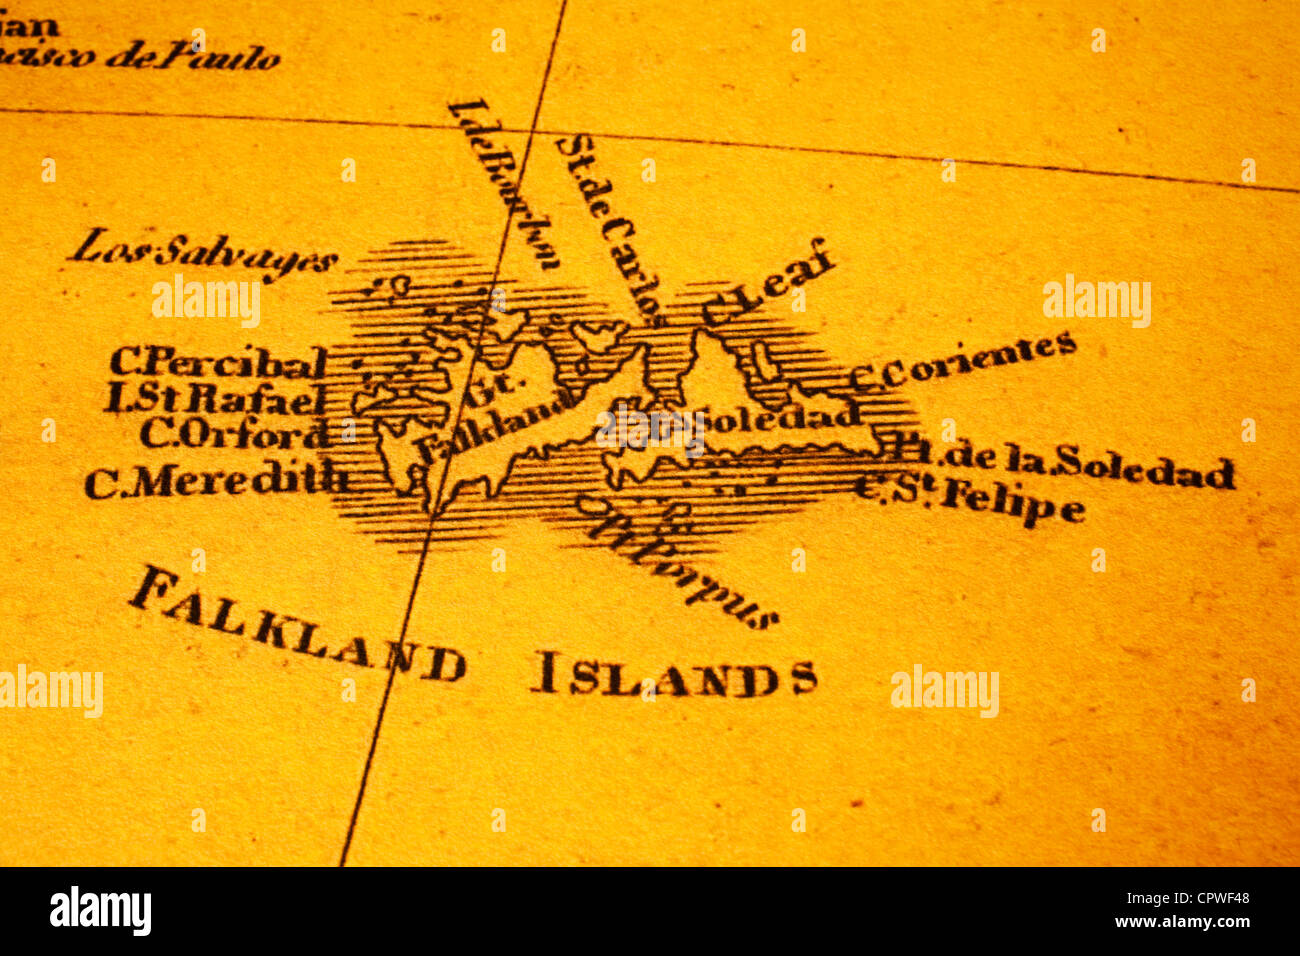 Alte Karte der Falkland-Inseln oder Malvinas. Karte ist aus dem Jahr 1817 und nicht urheberrechtlich geschützt. Stockfoto